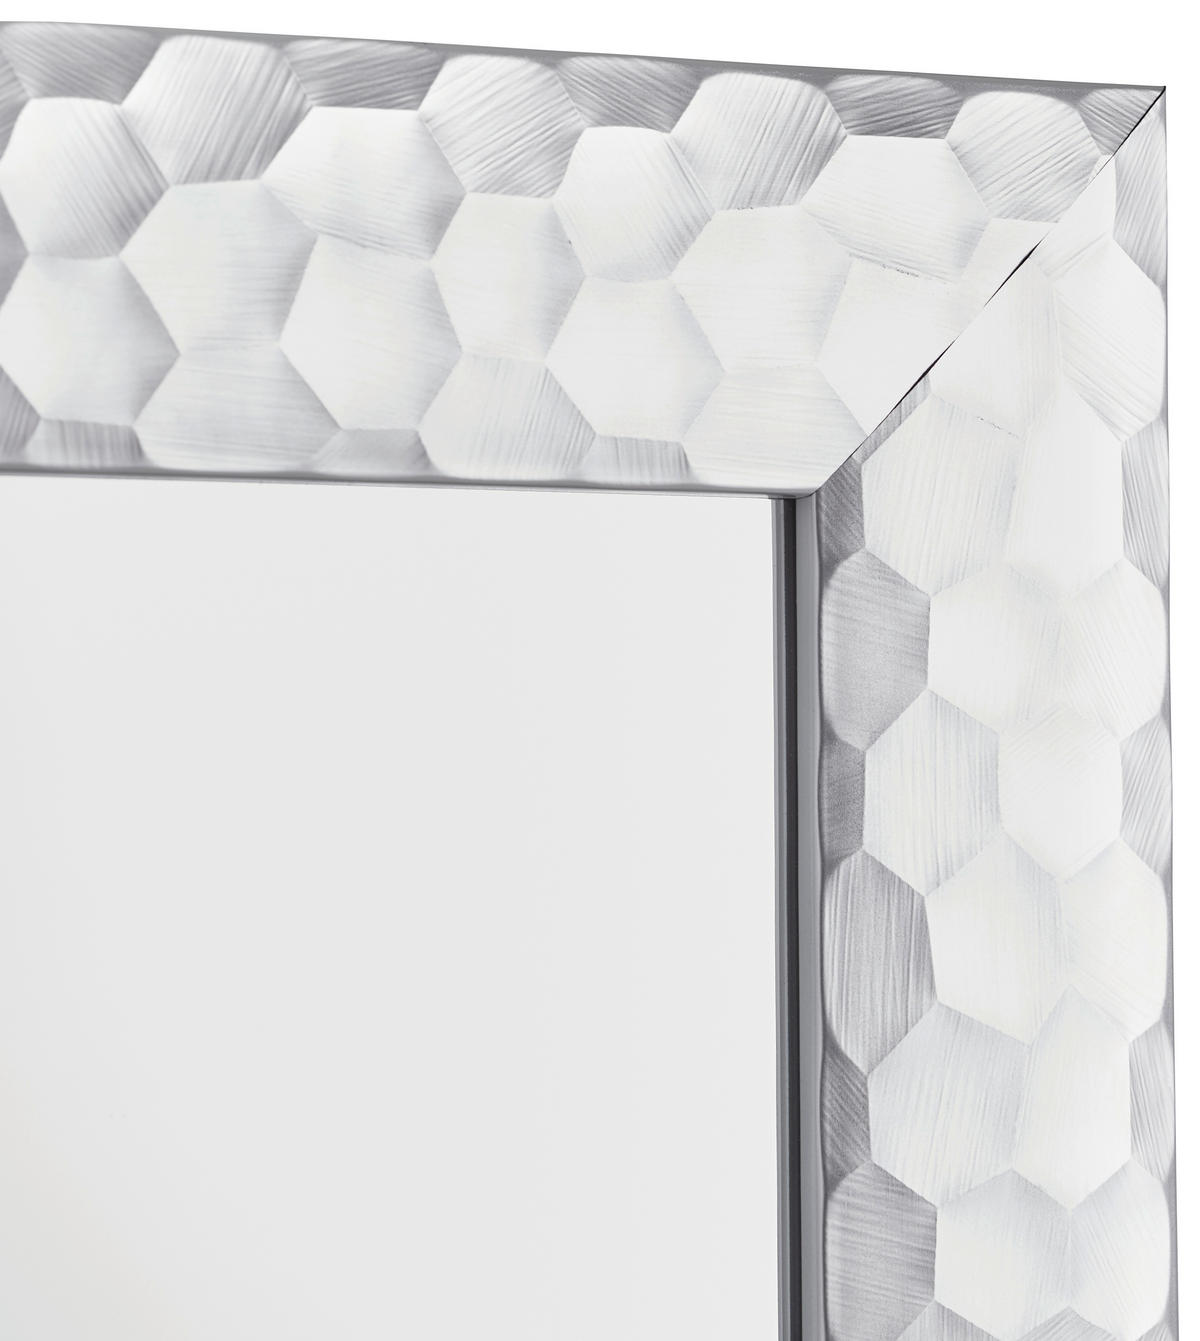 XORA Wandspiegel mit Rahmen in Silberfarben ordern